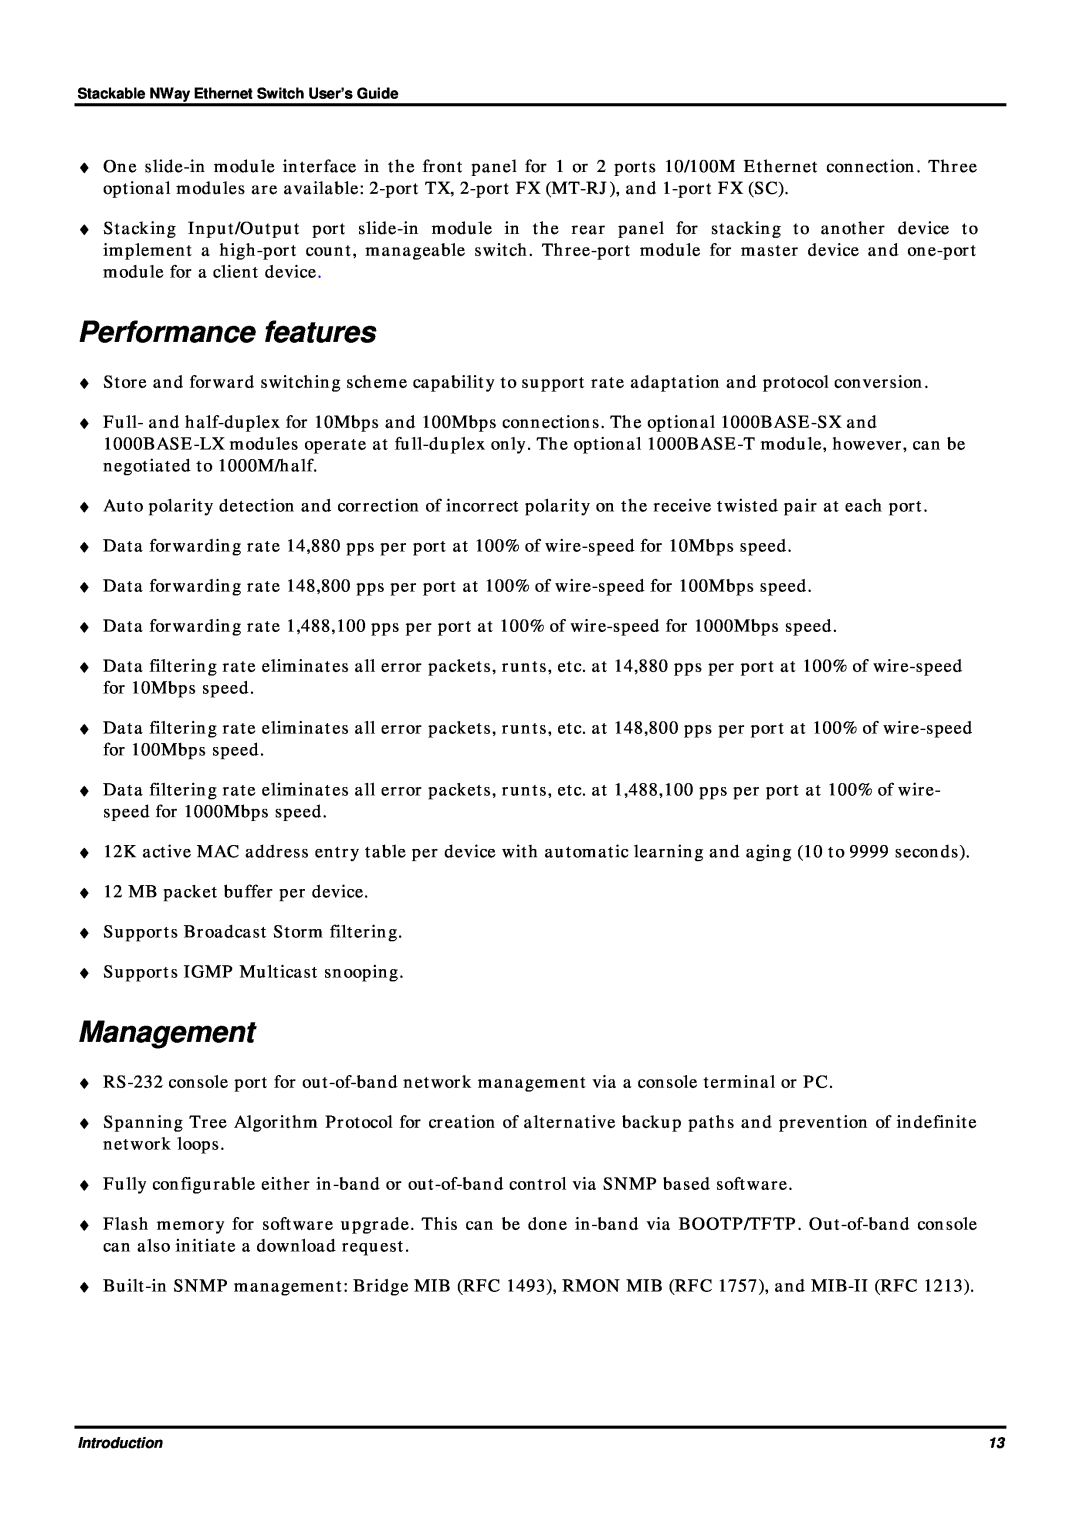 D-Link DES-3624 manual Performance features, Management 